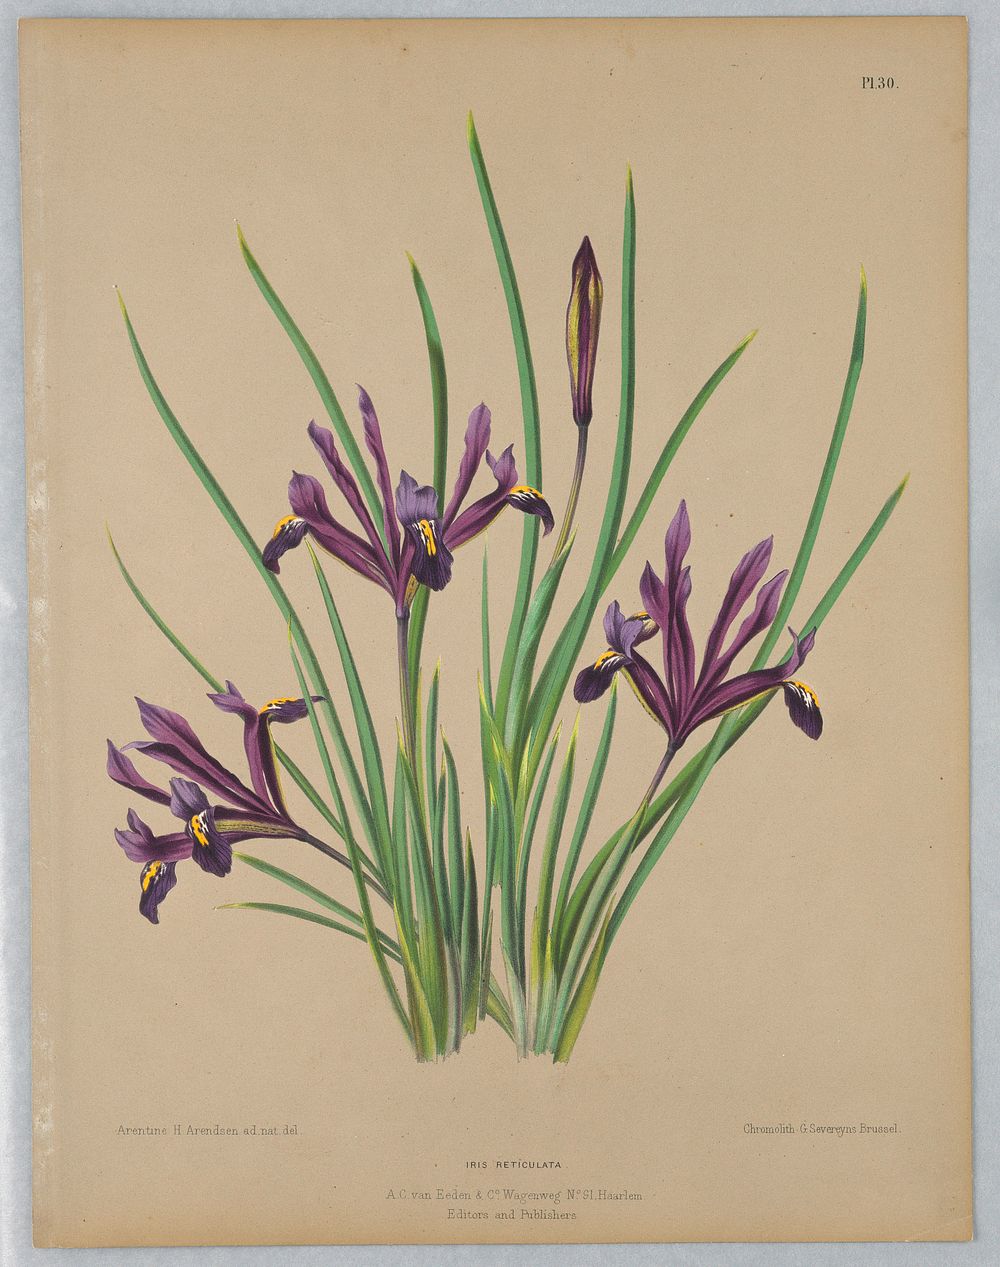 Iris Reticulata, from A. C. Van Eeden's "Flora of Haarlem"